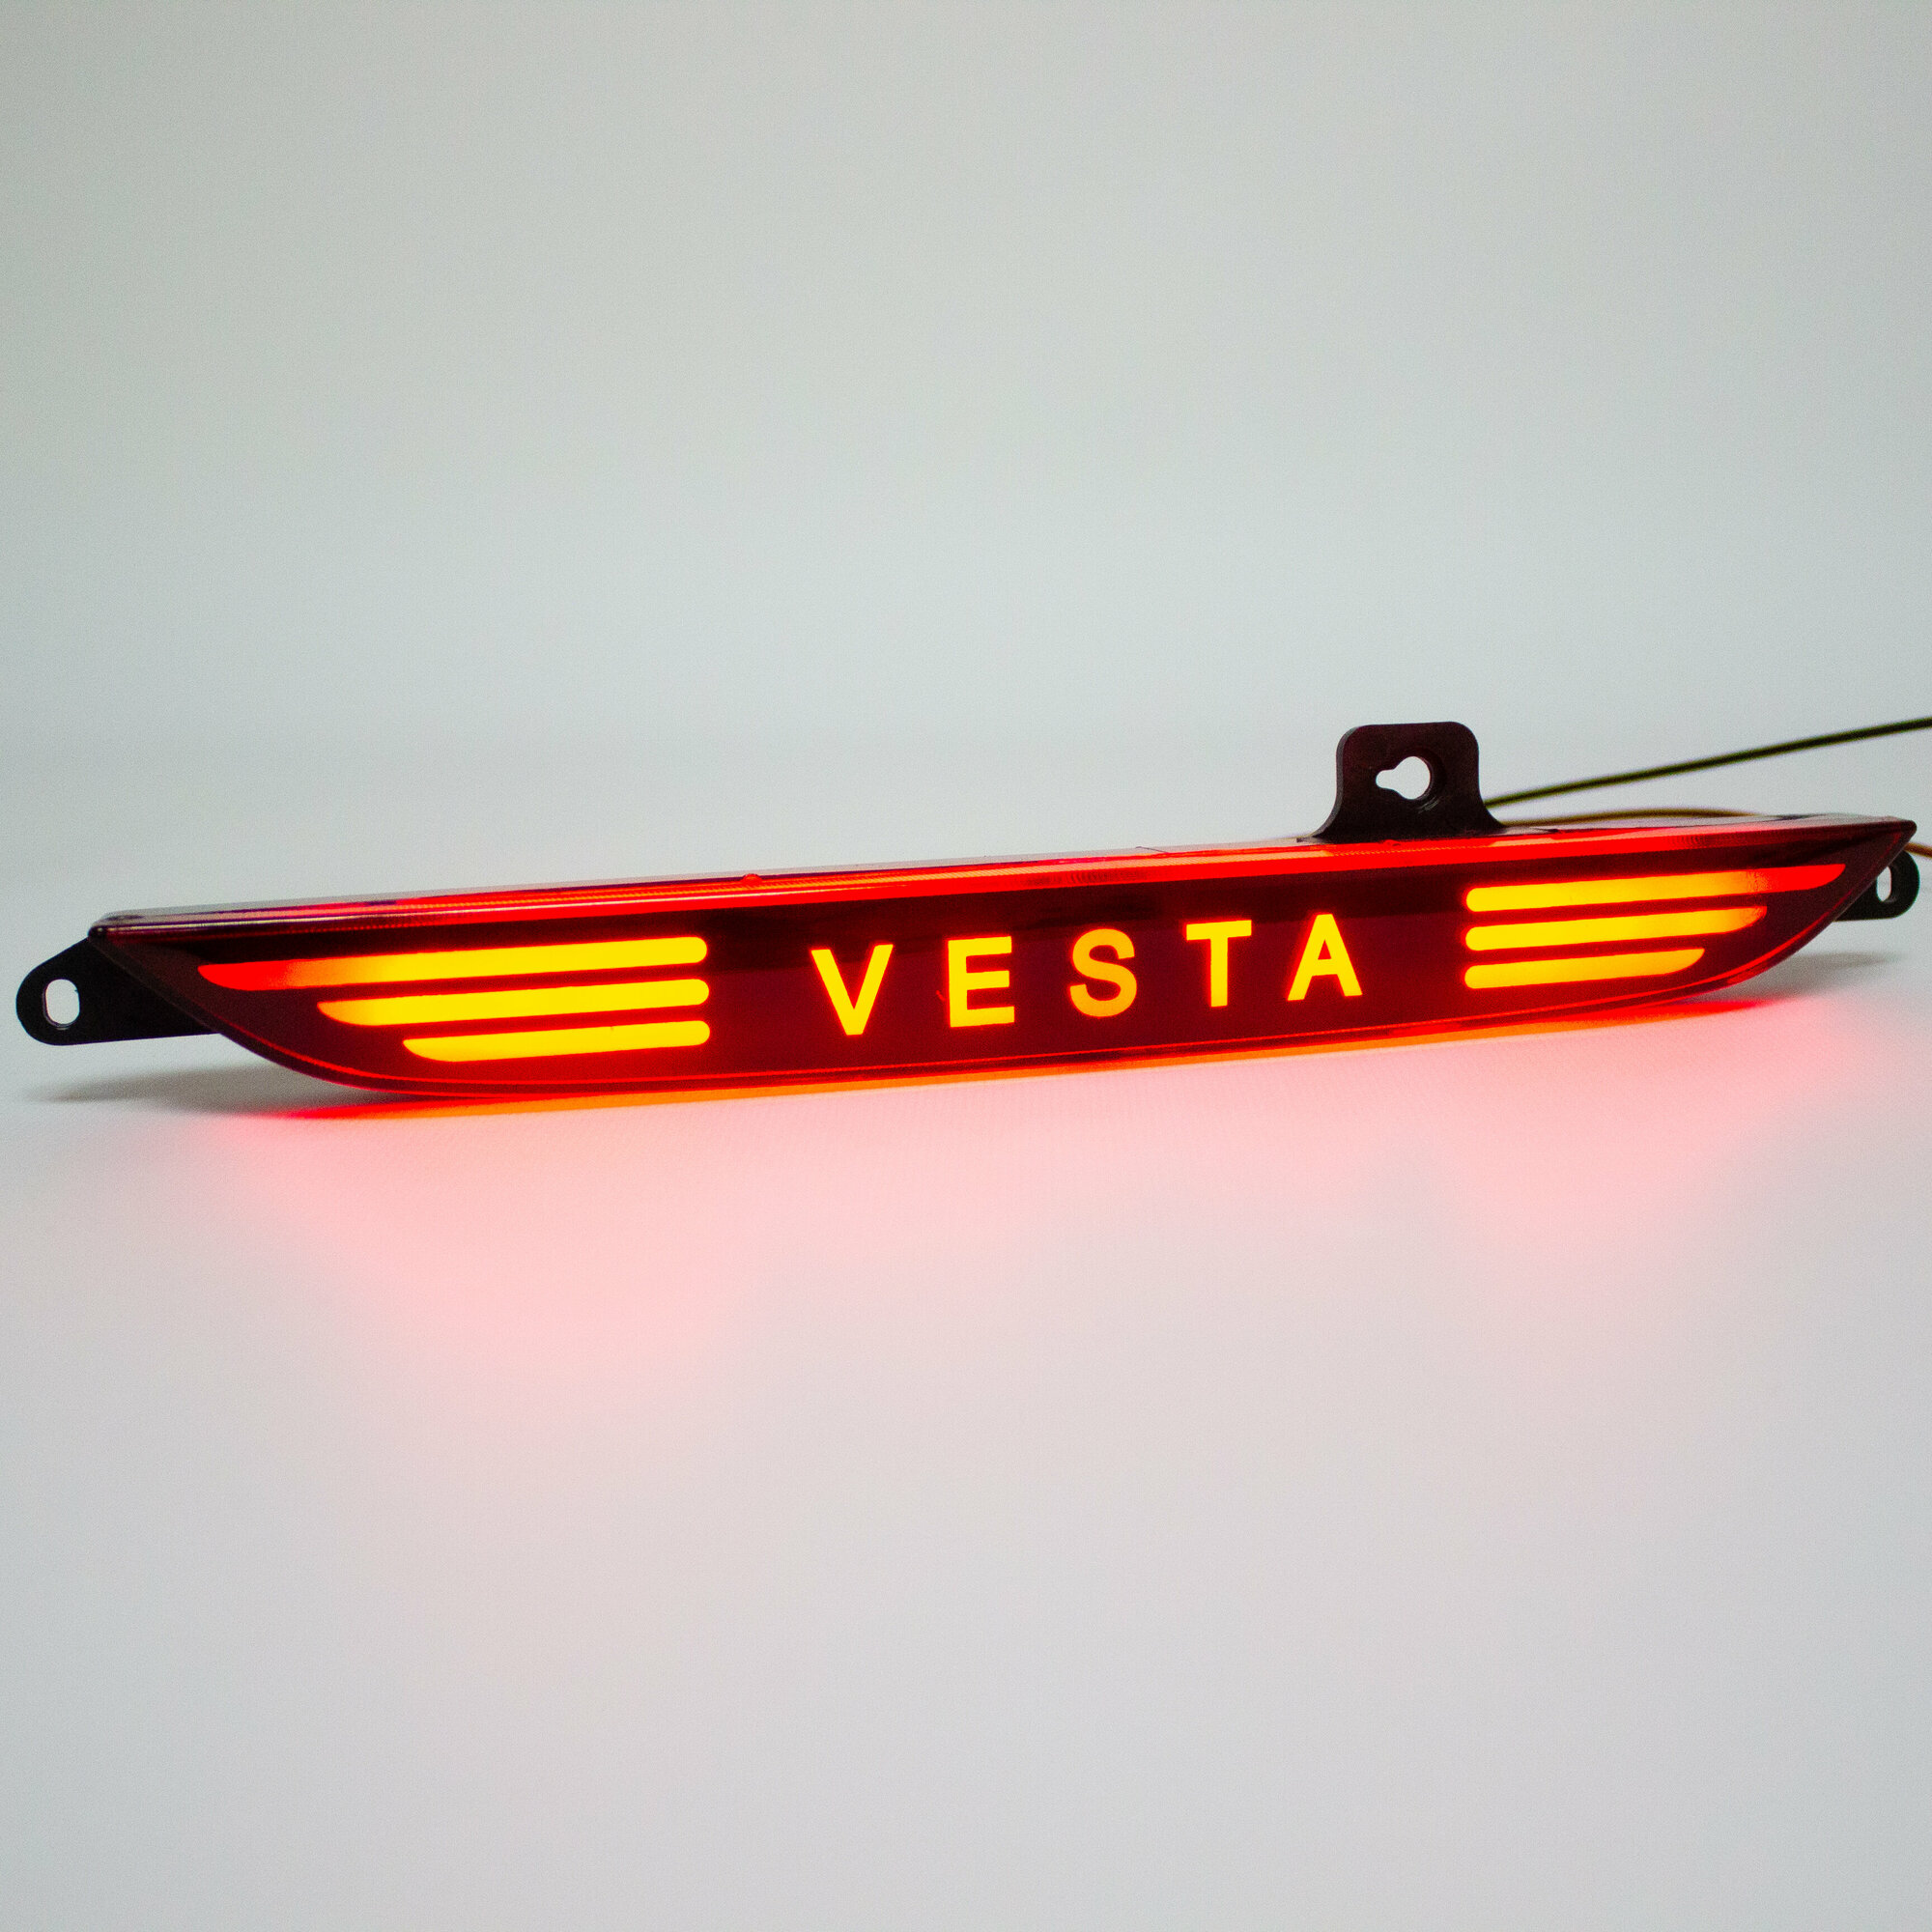 Задний ПТФ Веста диодный c надписью Vesta, фонарь противотуманный под стандарт в задний бампер Веста кросс, седан, универсал 1шт.